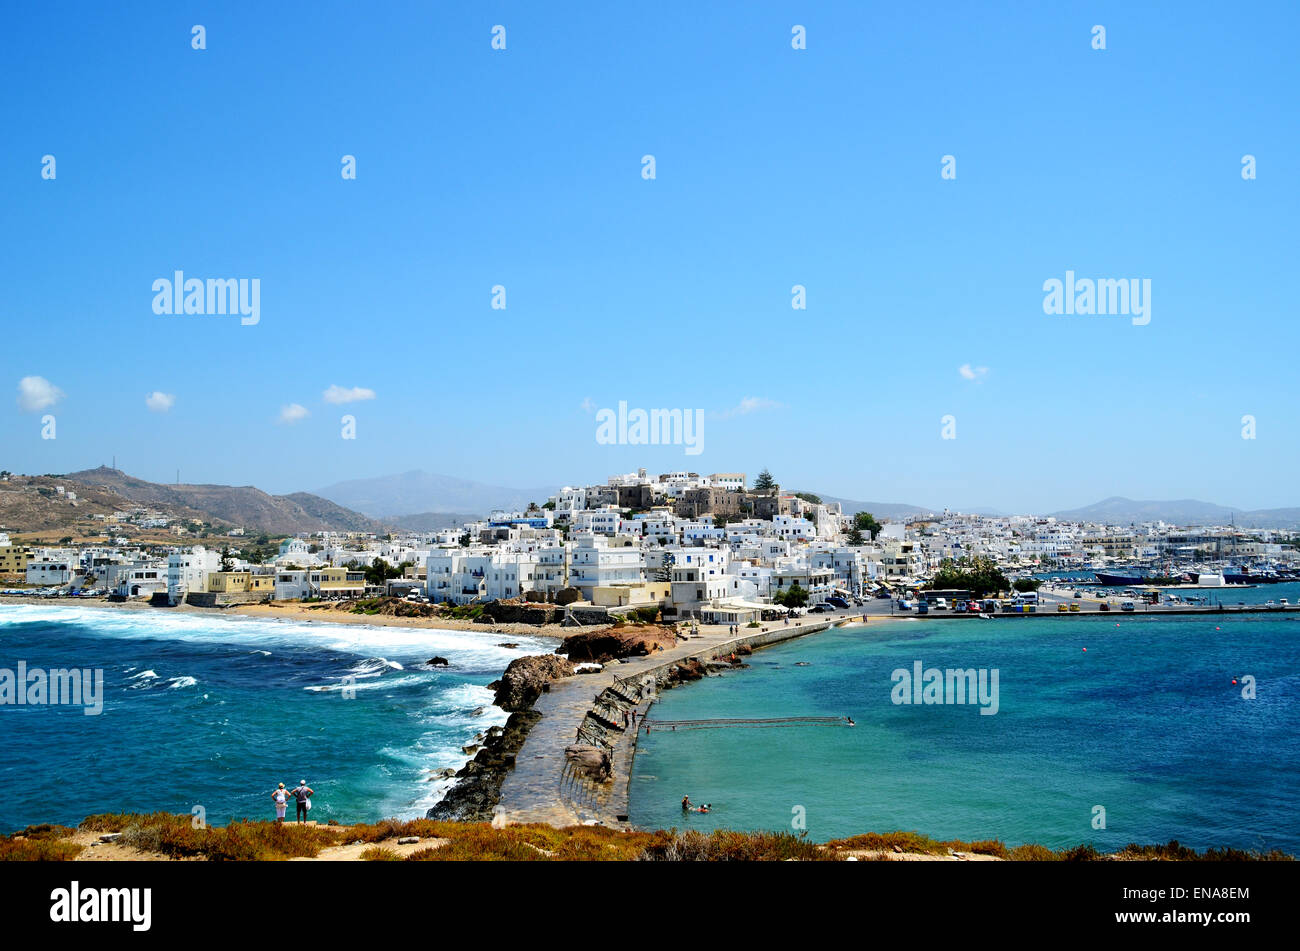 Isola di Naxos mare Egeo, isola greca, vacanze estive,Naxos, Grecia, isola, Cicladi, greco, mare, viaggi, Egeo, architettura Foto Stock